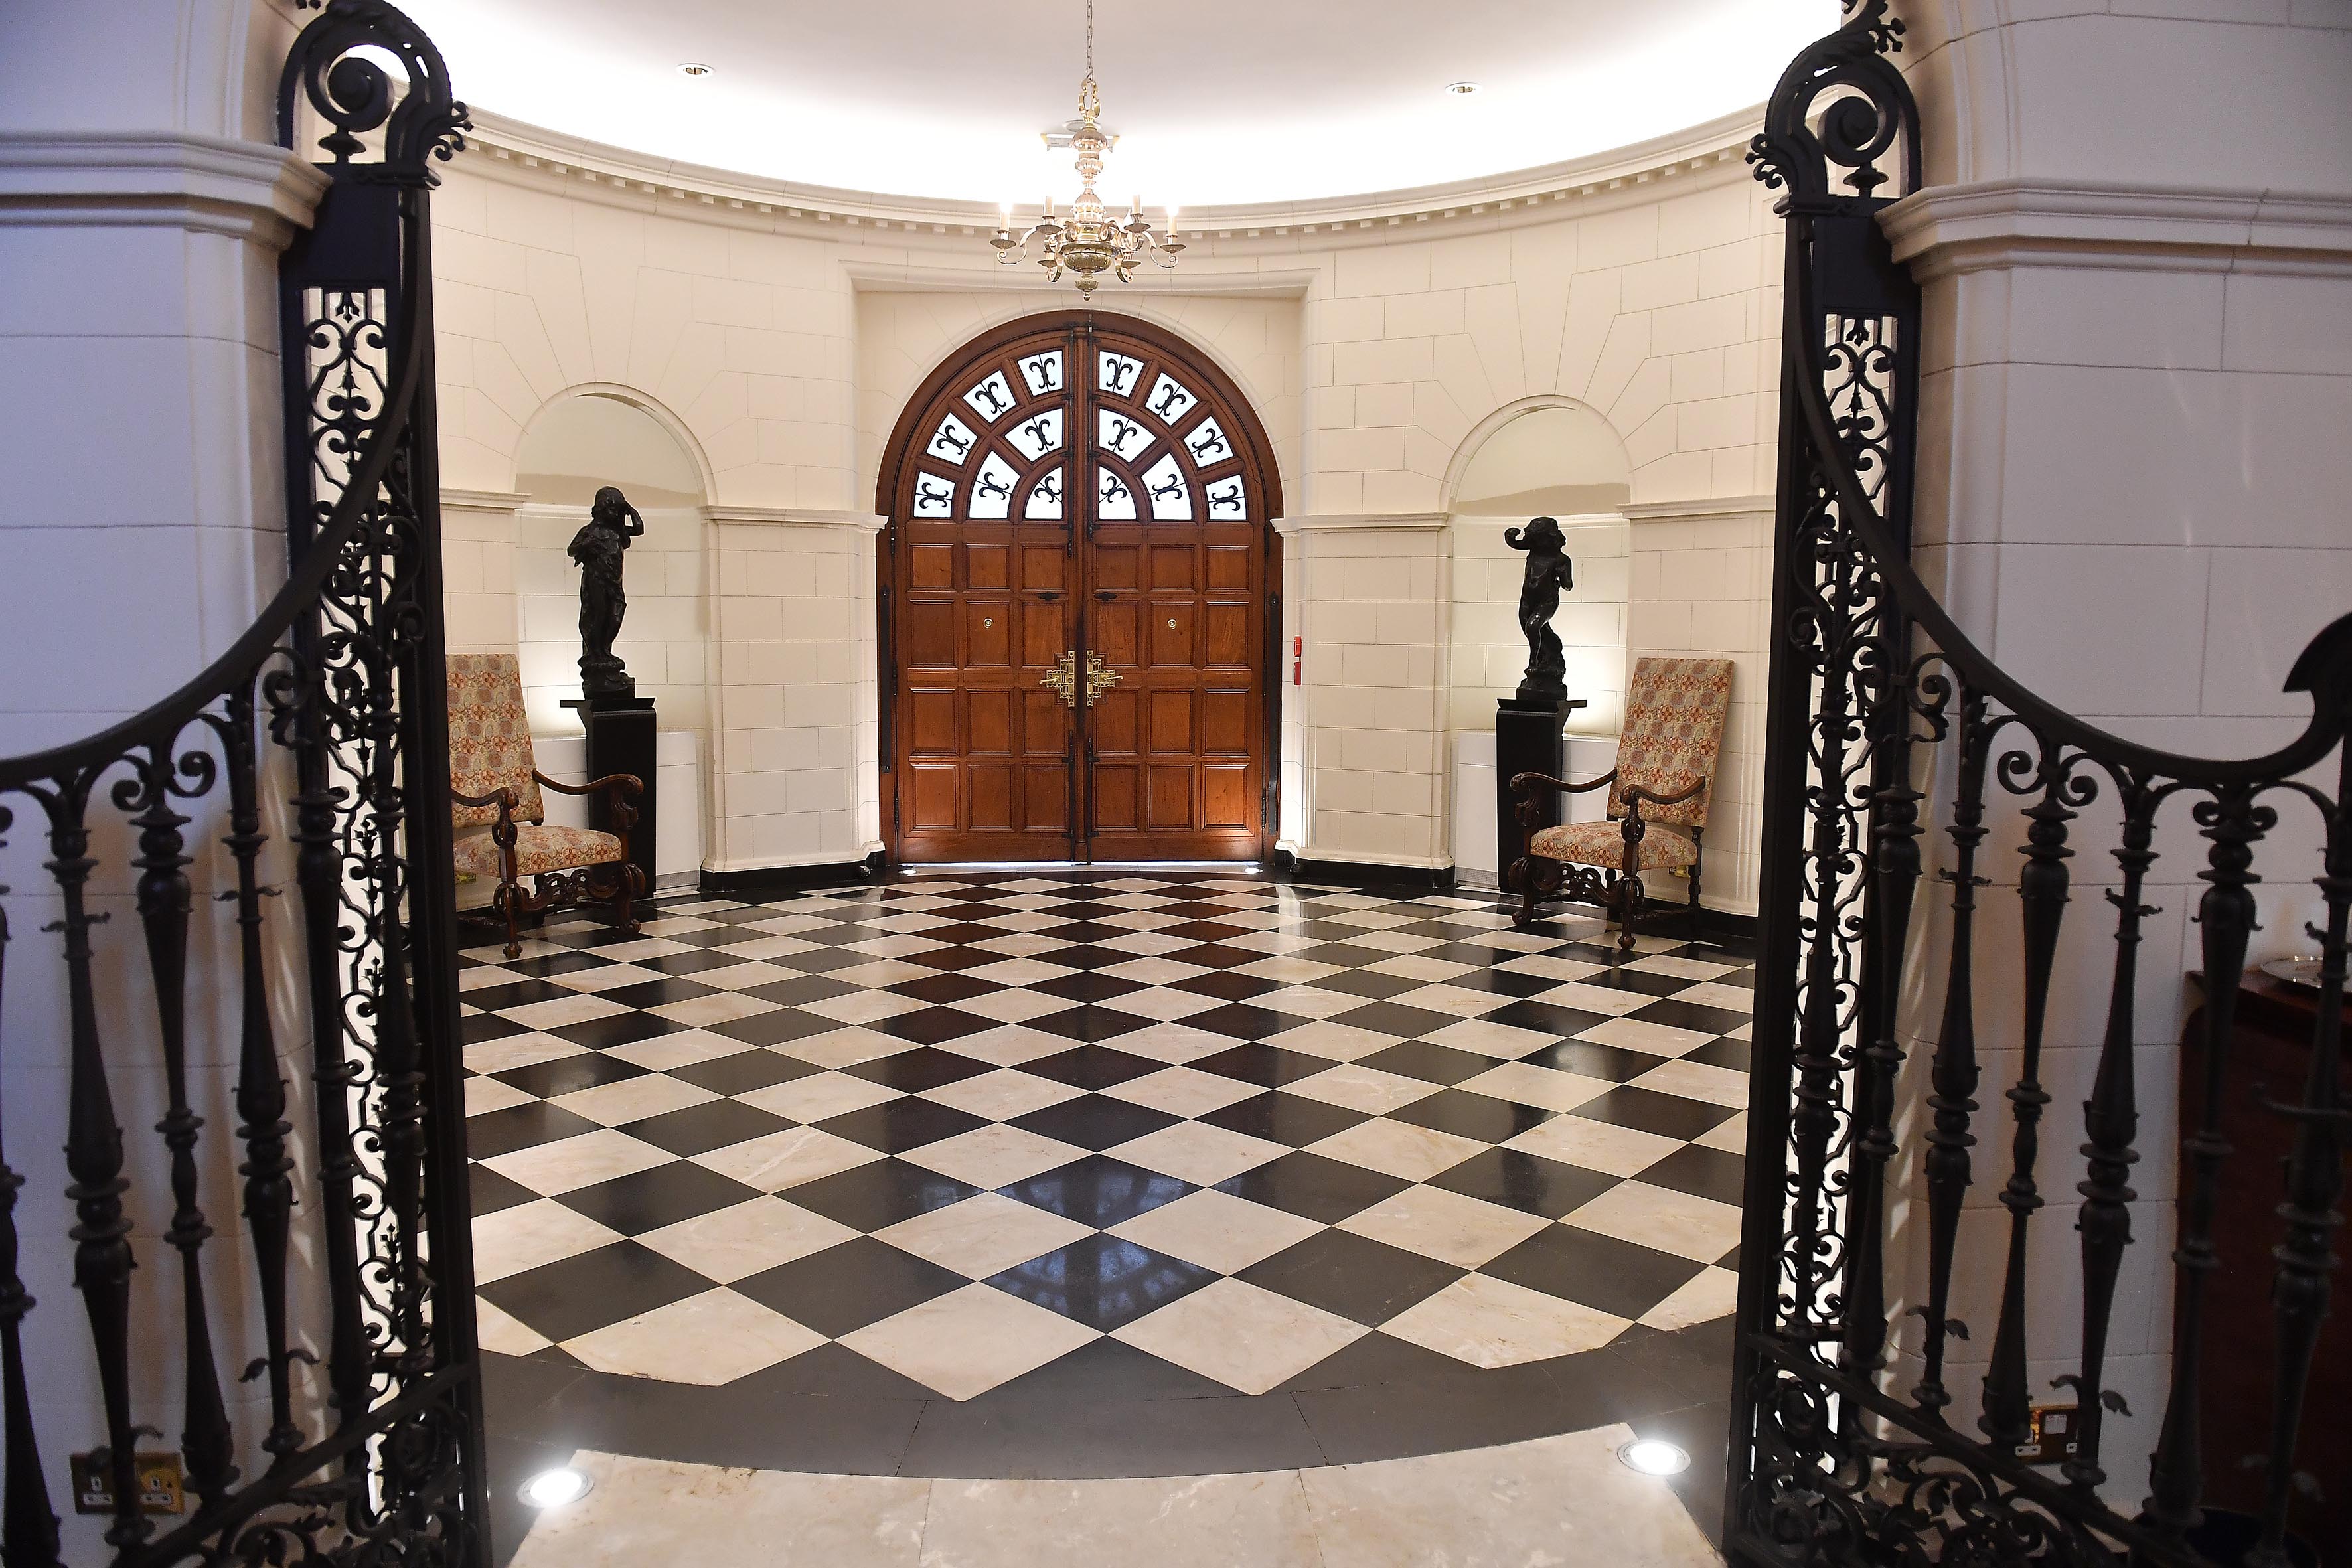 El vestíbulo, de planta circular y solado de diseño ajedrezado, se impone entre rejas de hierro forjado (Maximiliano Luna)